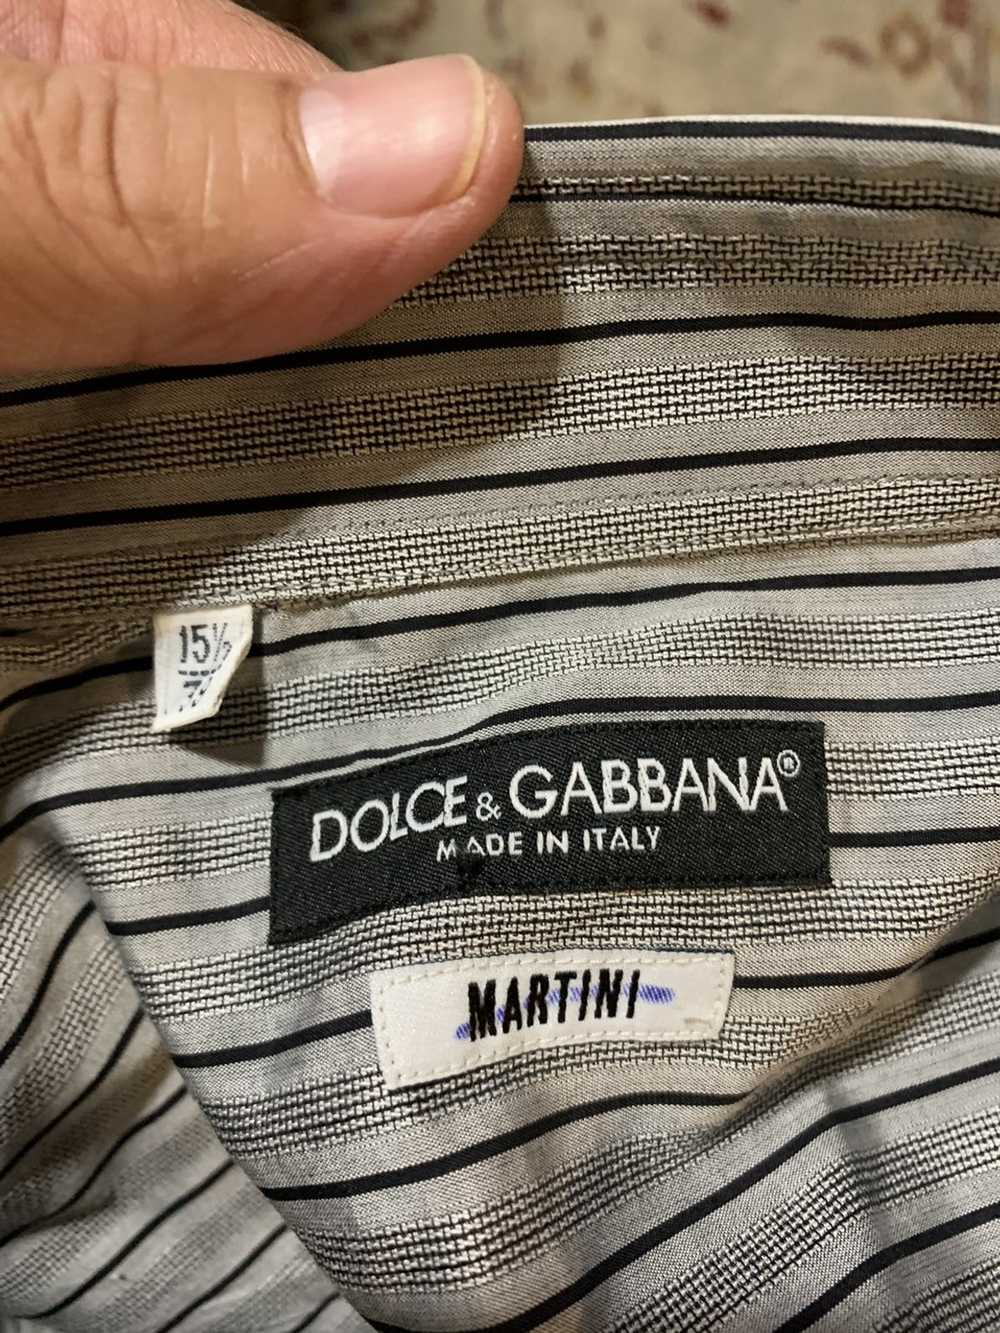 Dolce & Gabbana Martini Striped shirt 15.5 x 35 - image 10